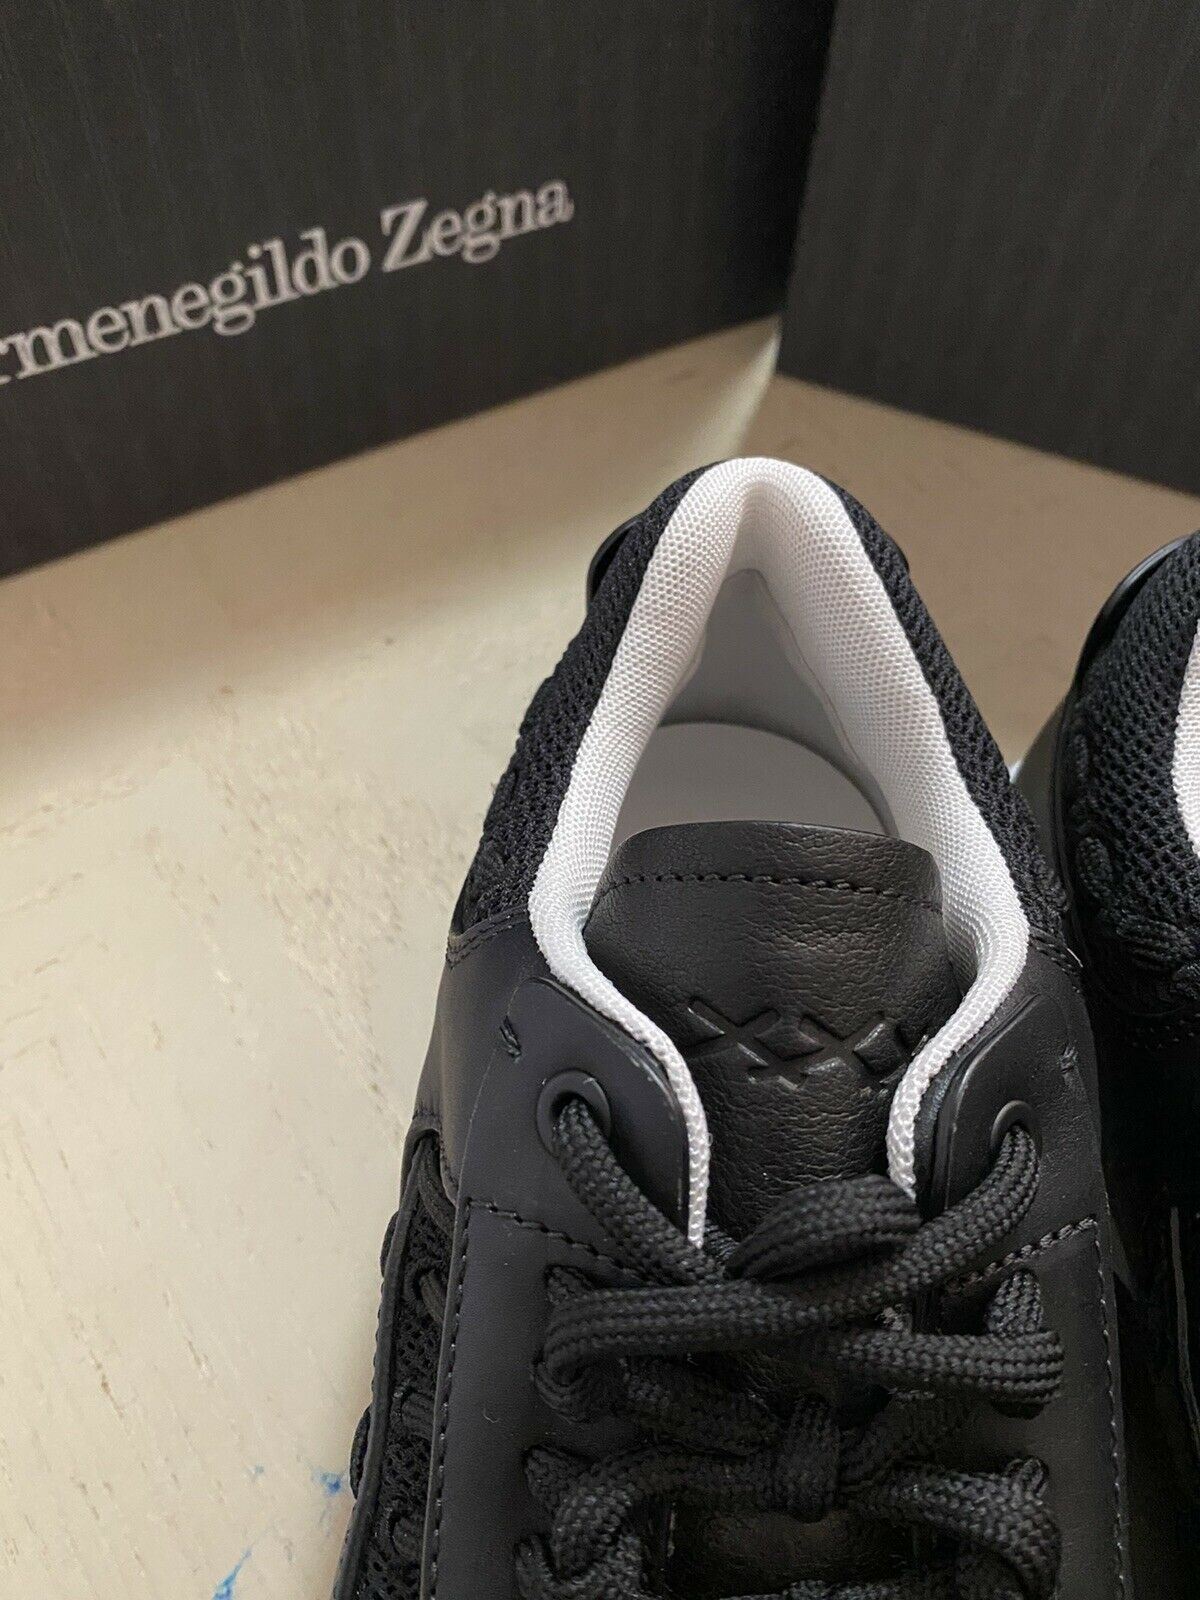 Neue 795 $ Ermenegildo Zegna Couture Leder-Sneakers Schuhe Schwarz 11 US Italien